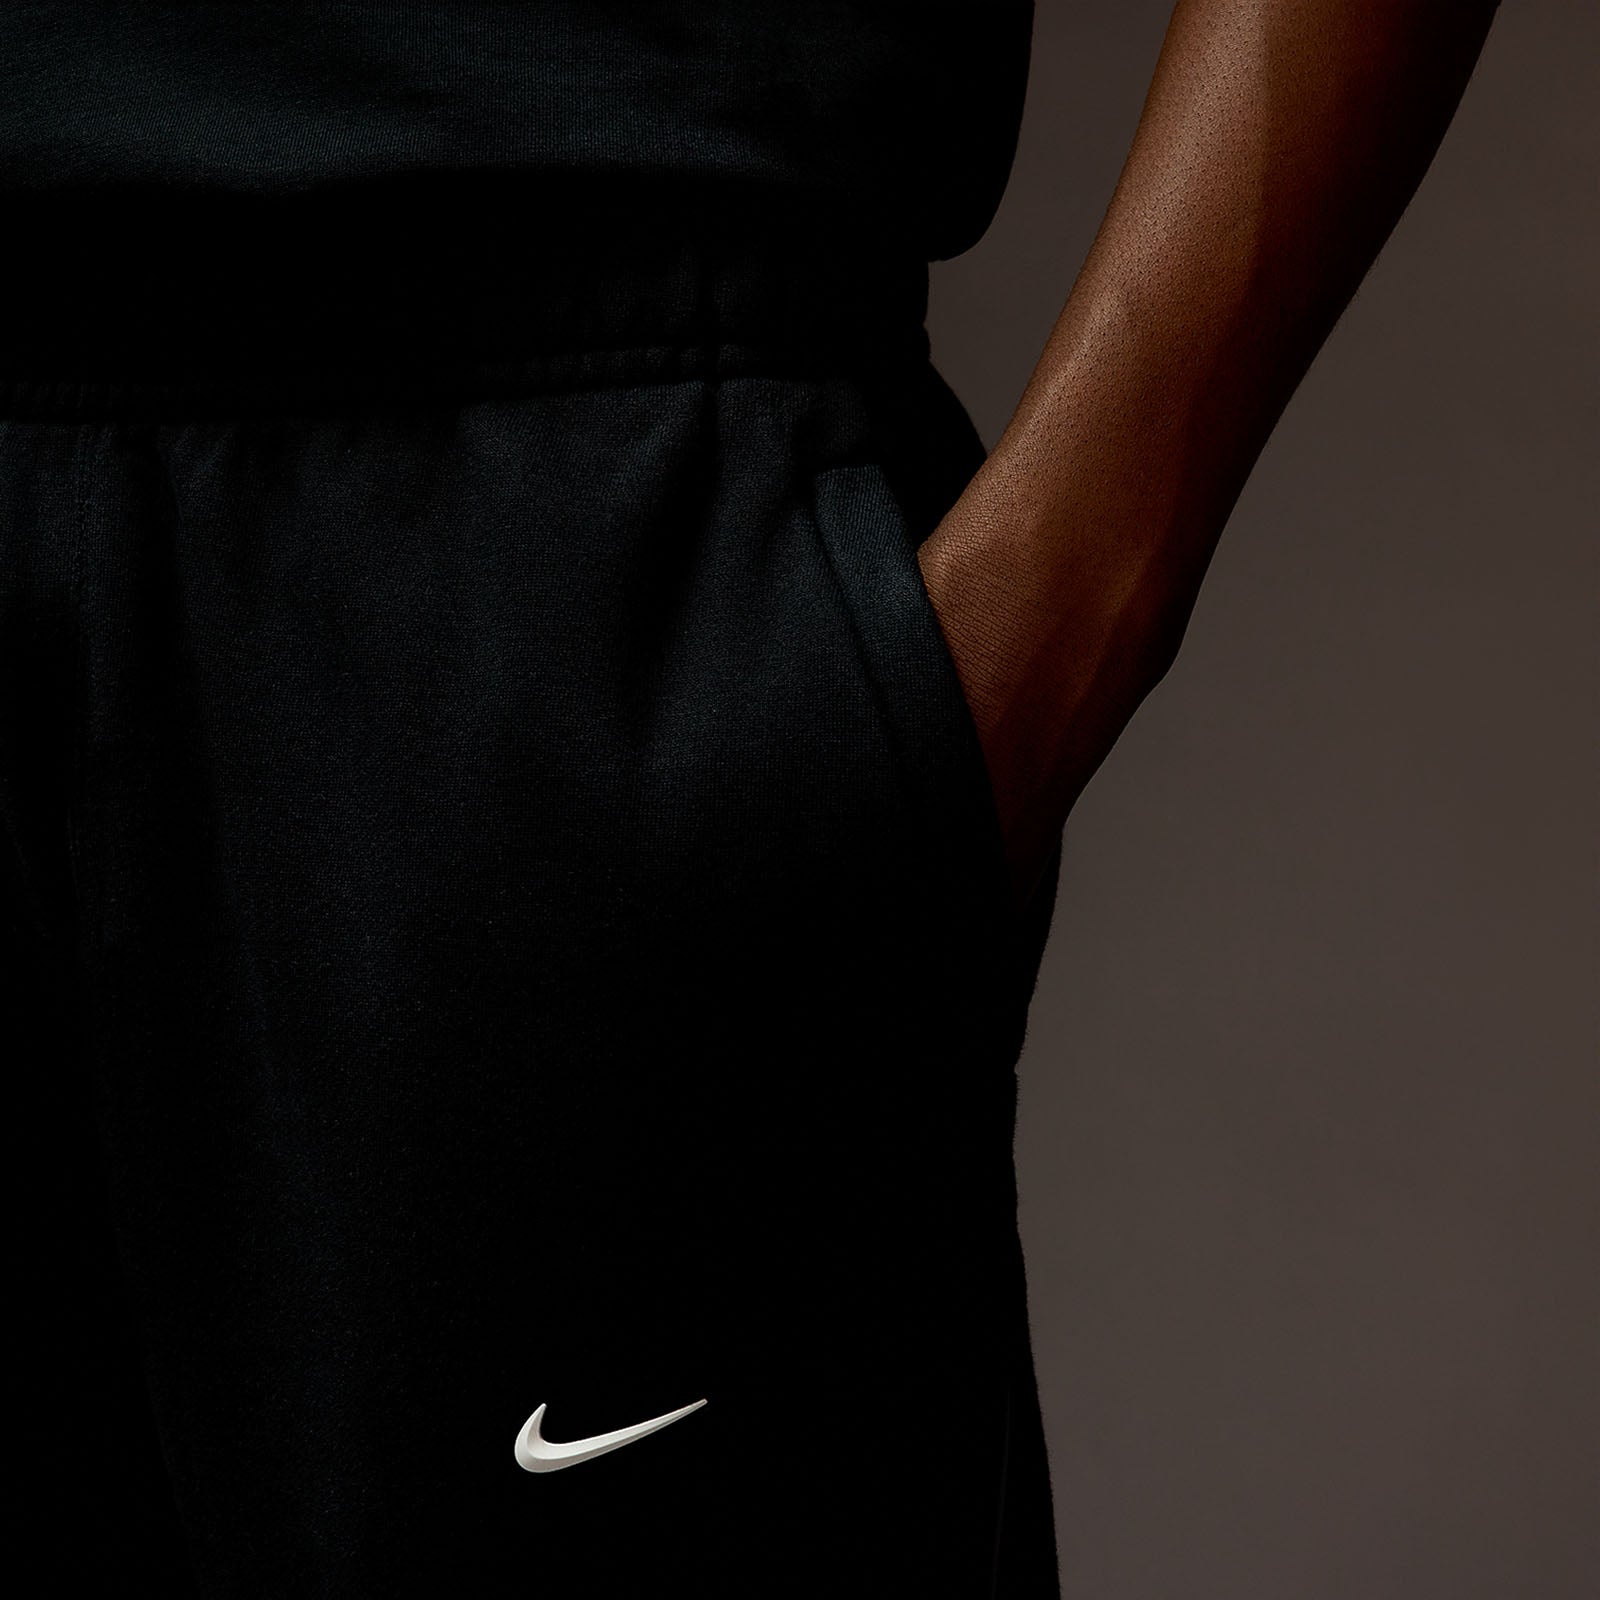 FW/23 🍂 Nike Loose Fit Hoodie - $120 Nike Loose Fit Sweats - $120 Nocta x  Nike AF1 - $210